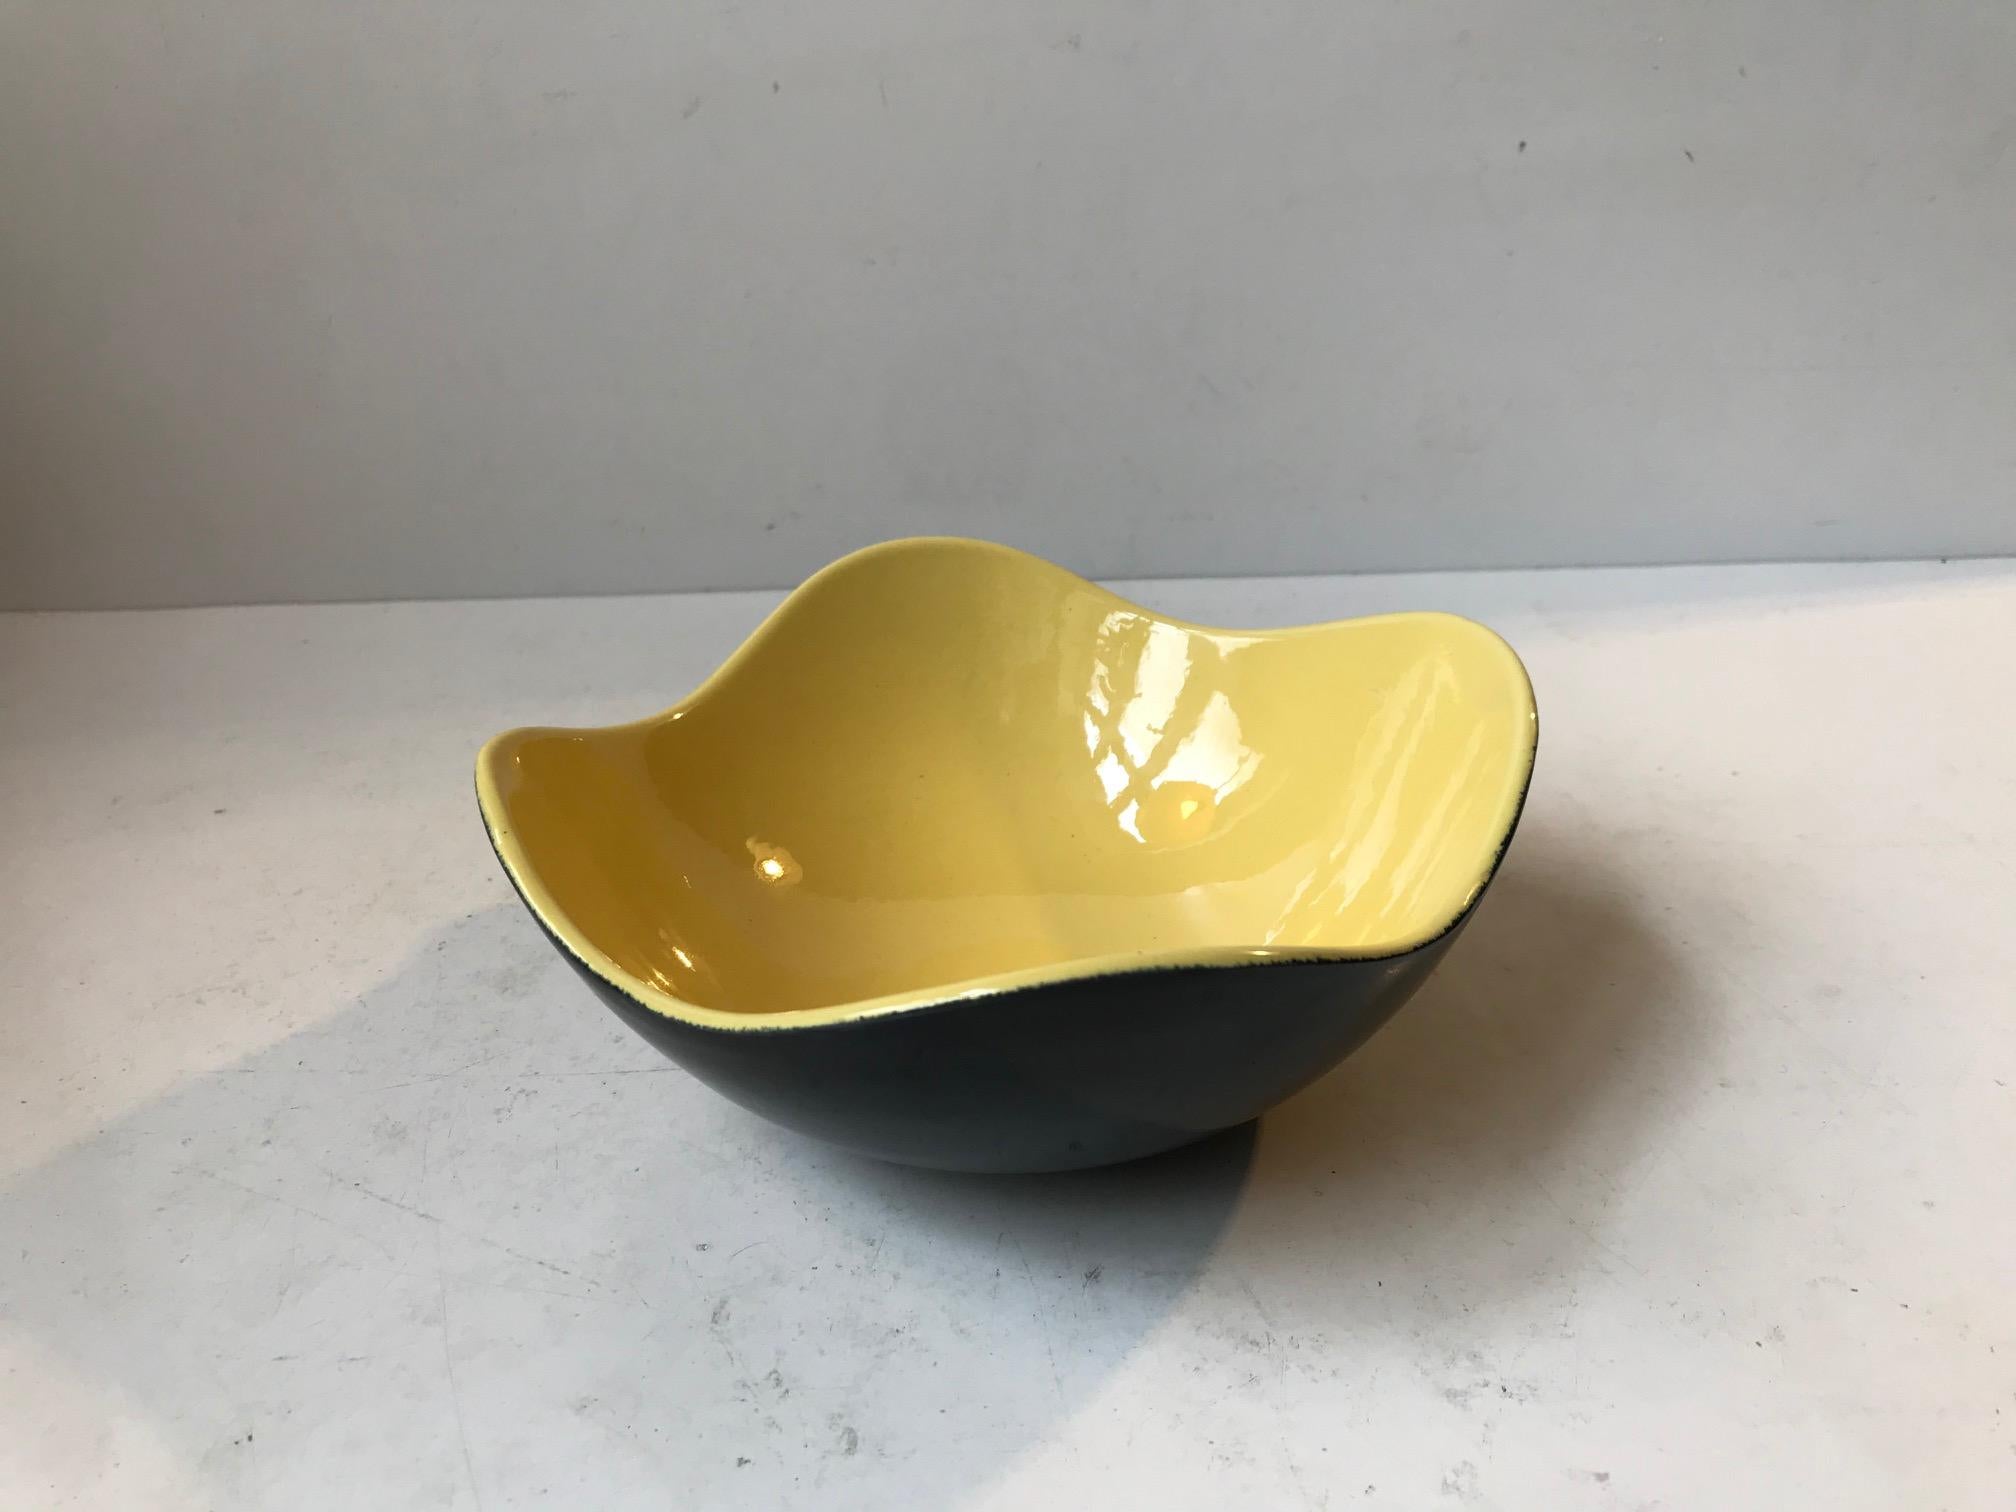 Un bol ou plat en céramique asymétrique ondulé exécuté dans des glaçures noires et jaunes. Il s'appelle Congo et a été conçu et fabriqué par Kronjyden Randers, vers 1950-59. Il mesure 17 cm de diamètre et a une hauteur de 7 cm.